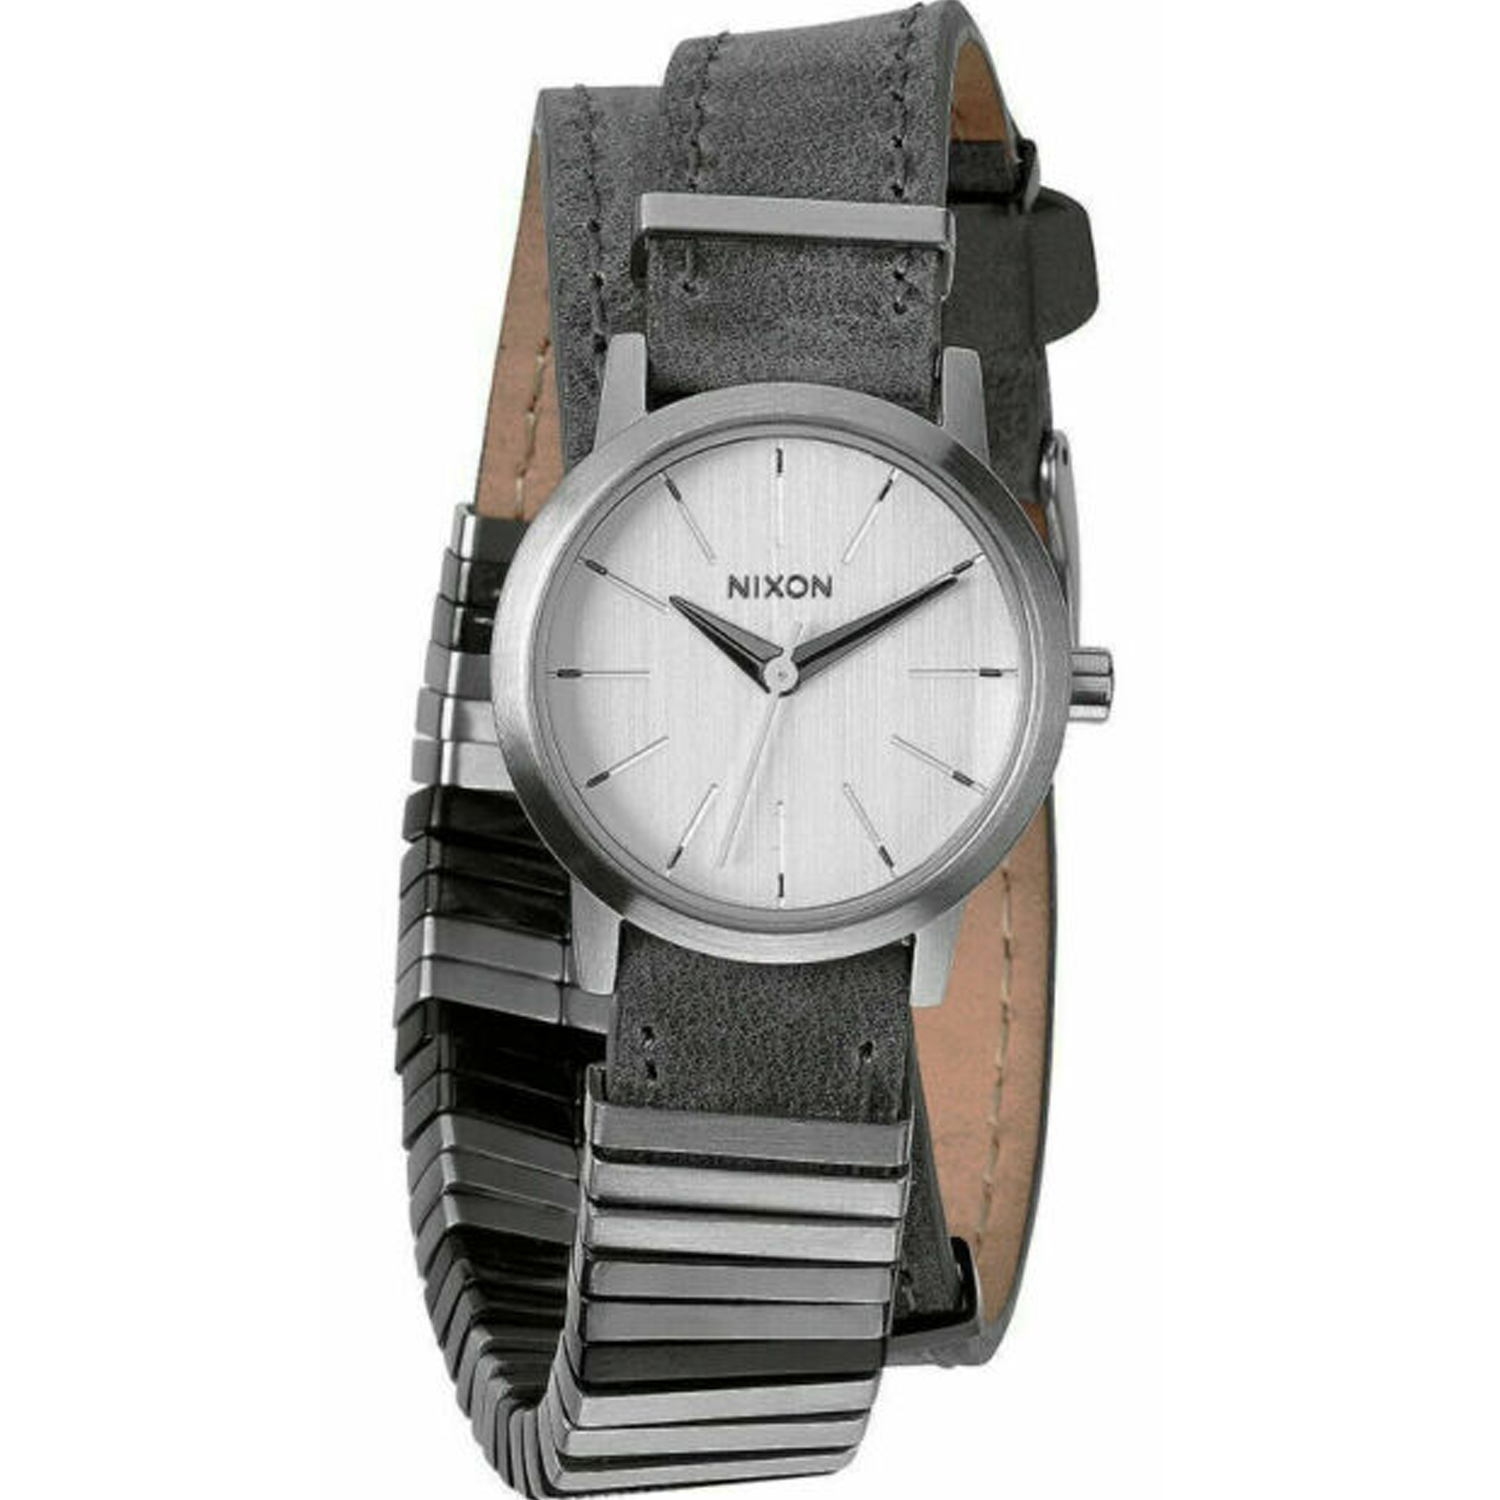 Nixon Women's Classic Silver Dial Watch - A403-1763